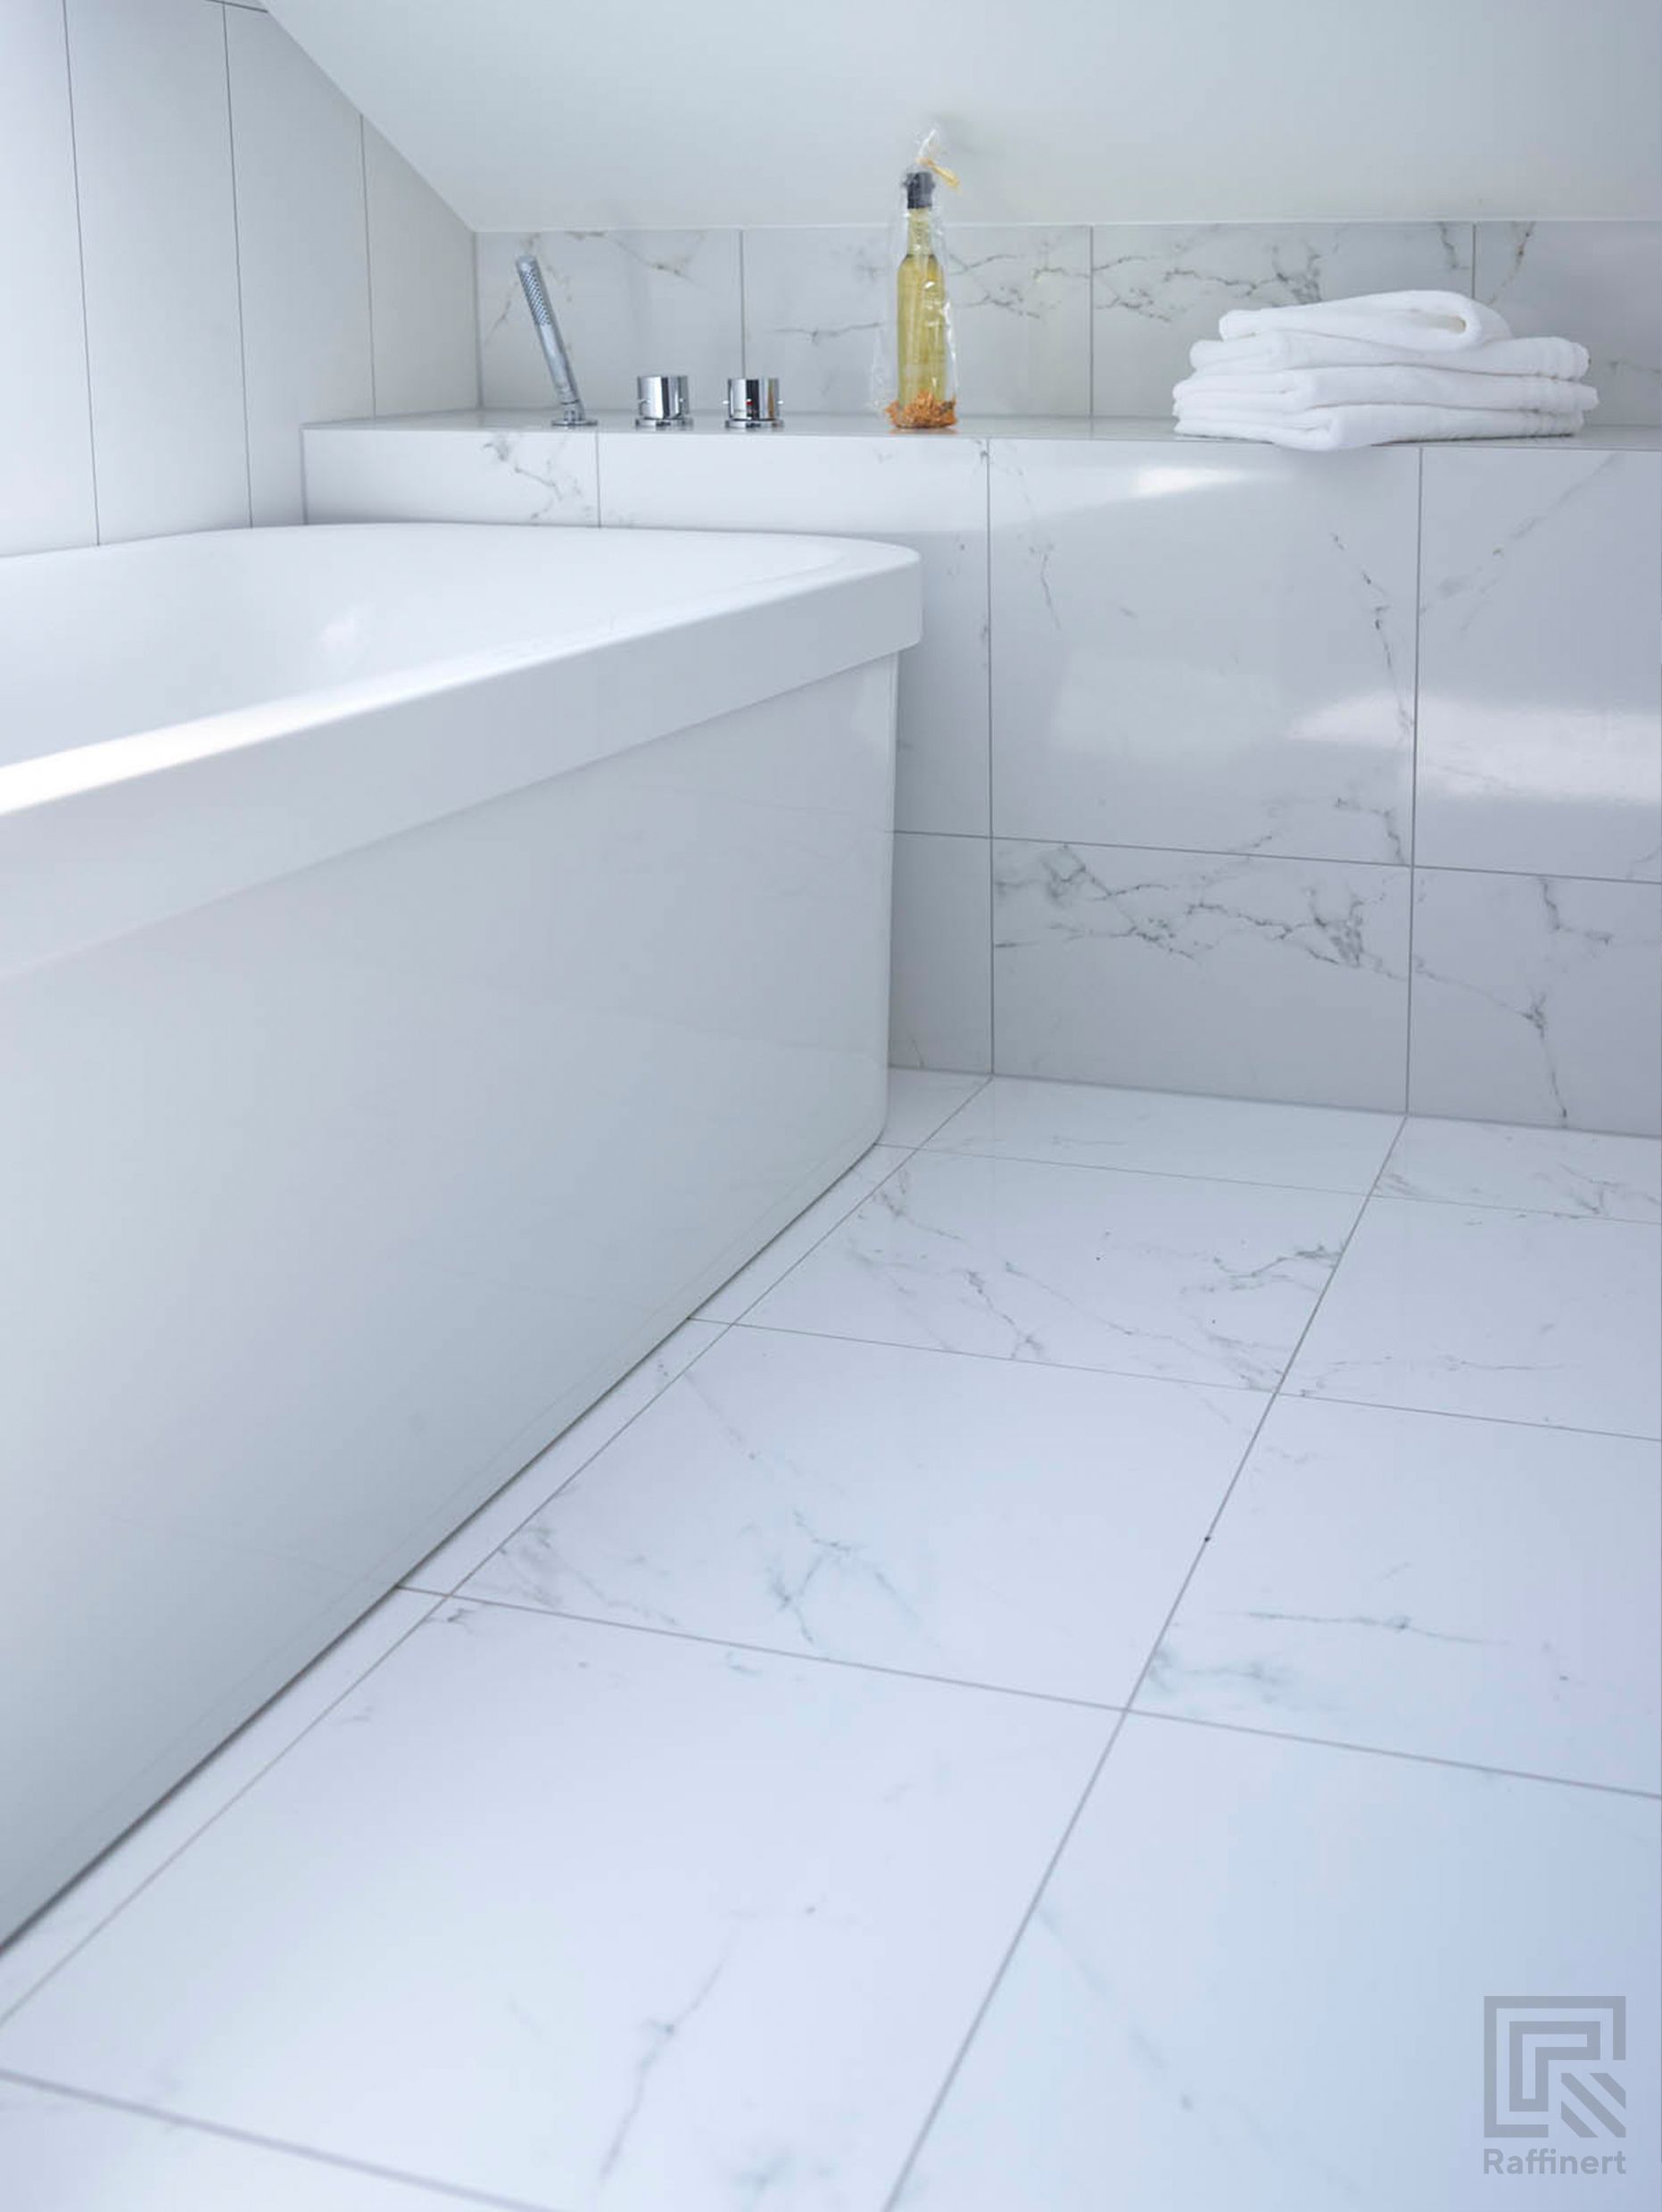 Frittstående hvitt badekar under skråtaket, med hylle innerst med marmorfliser, som på gulvet. På hyllen ligger det hvite brettede håndklær og står en såpeflaske.